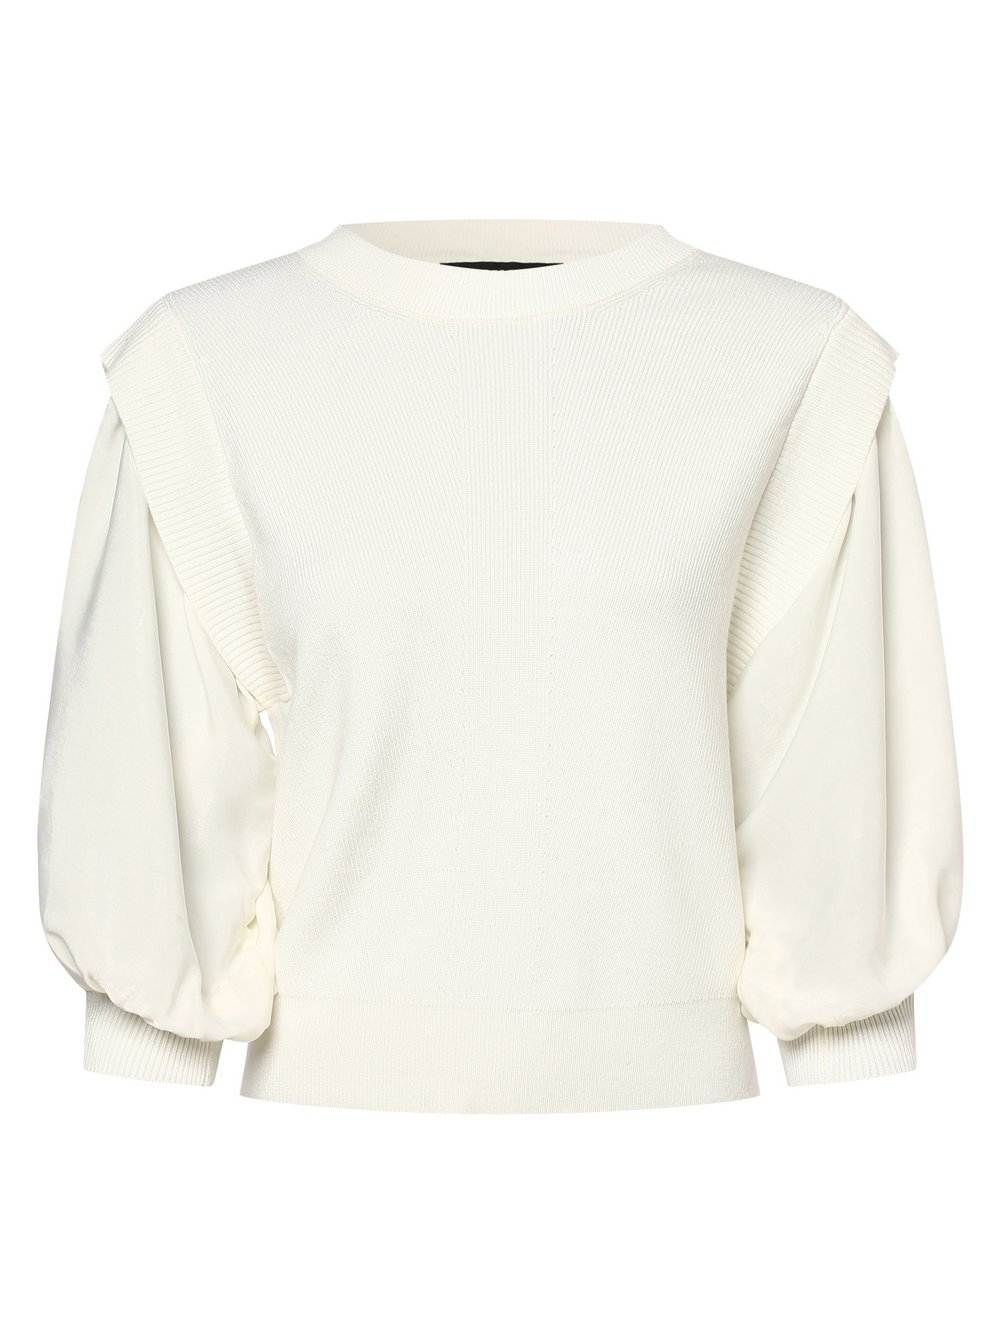 DKNY - Sweter damski, biały